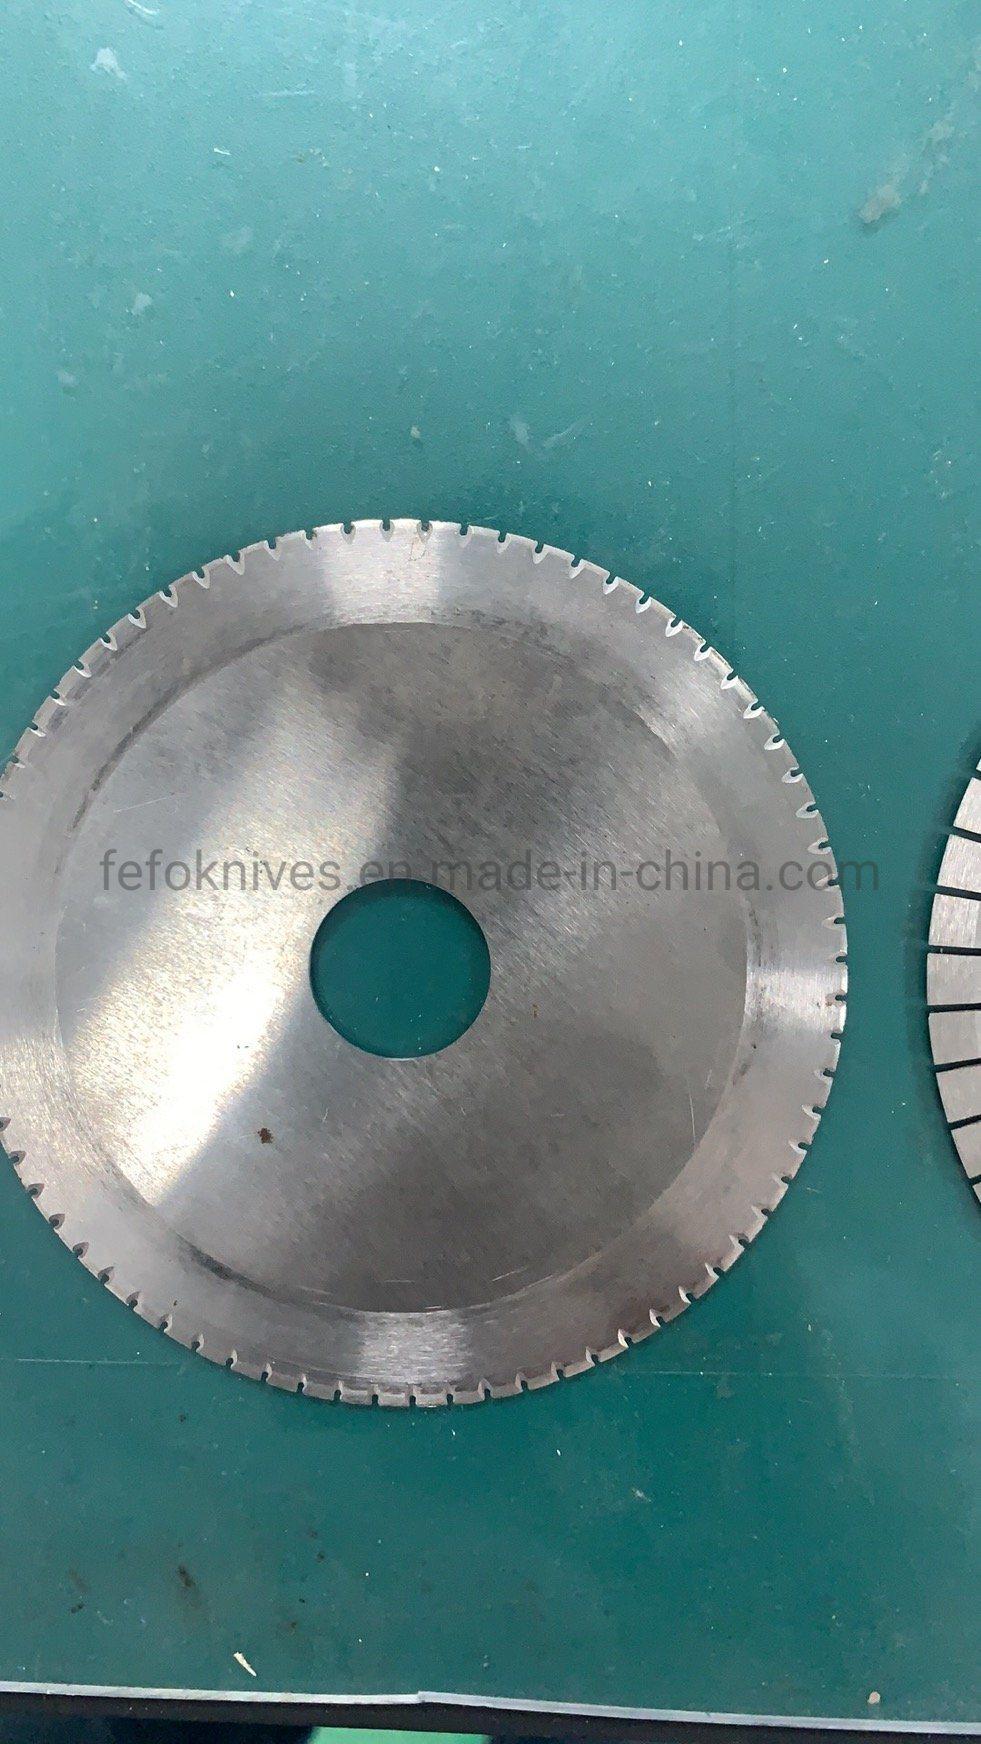 China Bias Cutters Rubber Cutting Blade Core Cutter